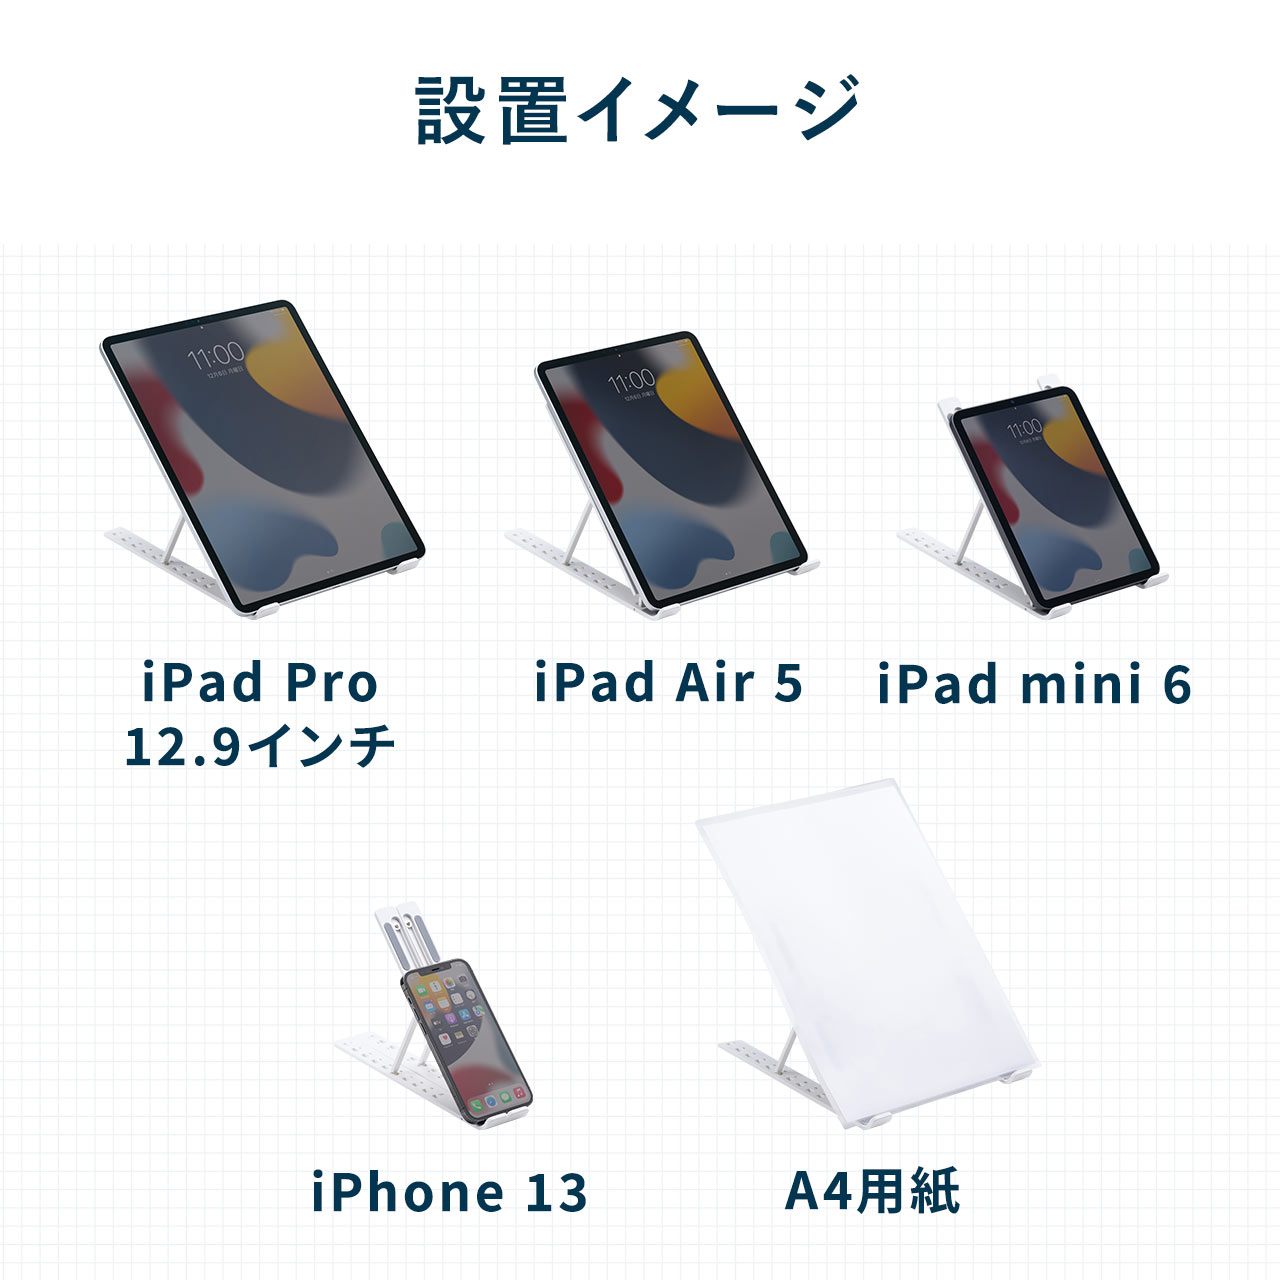 iPadX^h ^ ܂肽 10iK px ΂ f y pP 菑 CXg ׋ iPad Pro Air mini 200-STN064W